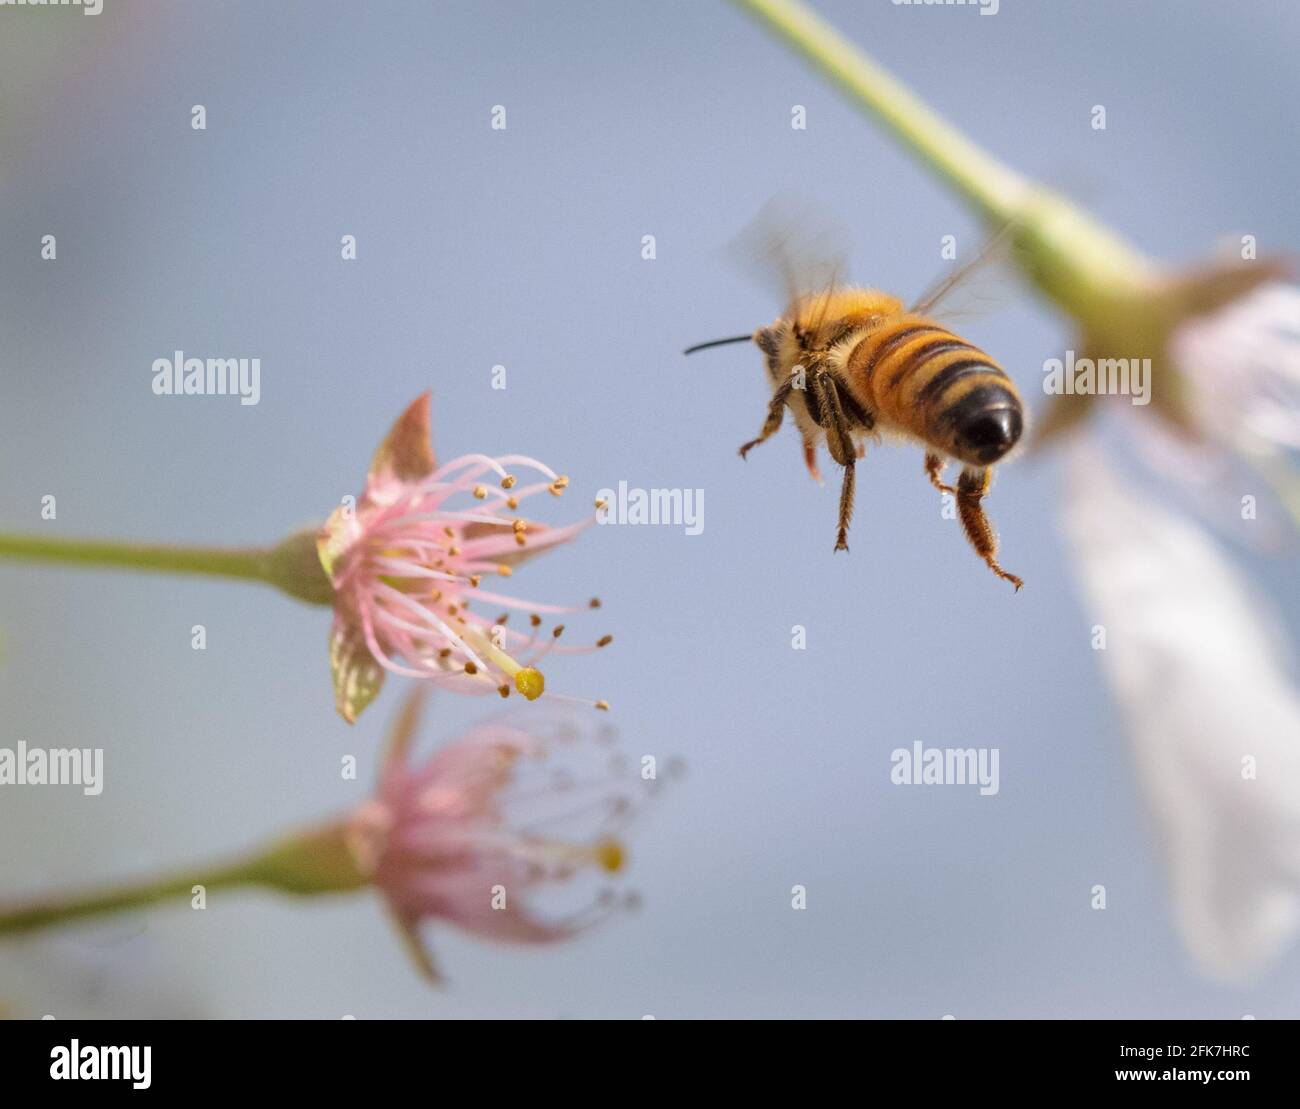 Westliche Honigbiene (APIs mellifera) - Hall County, Georgia. Honigbiene nähert sich der Blüte eines Kirschbaums. Stockfoto